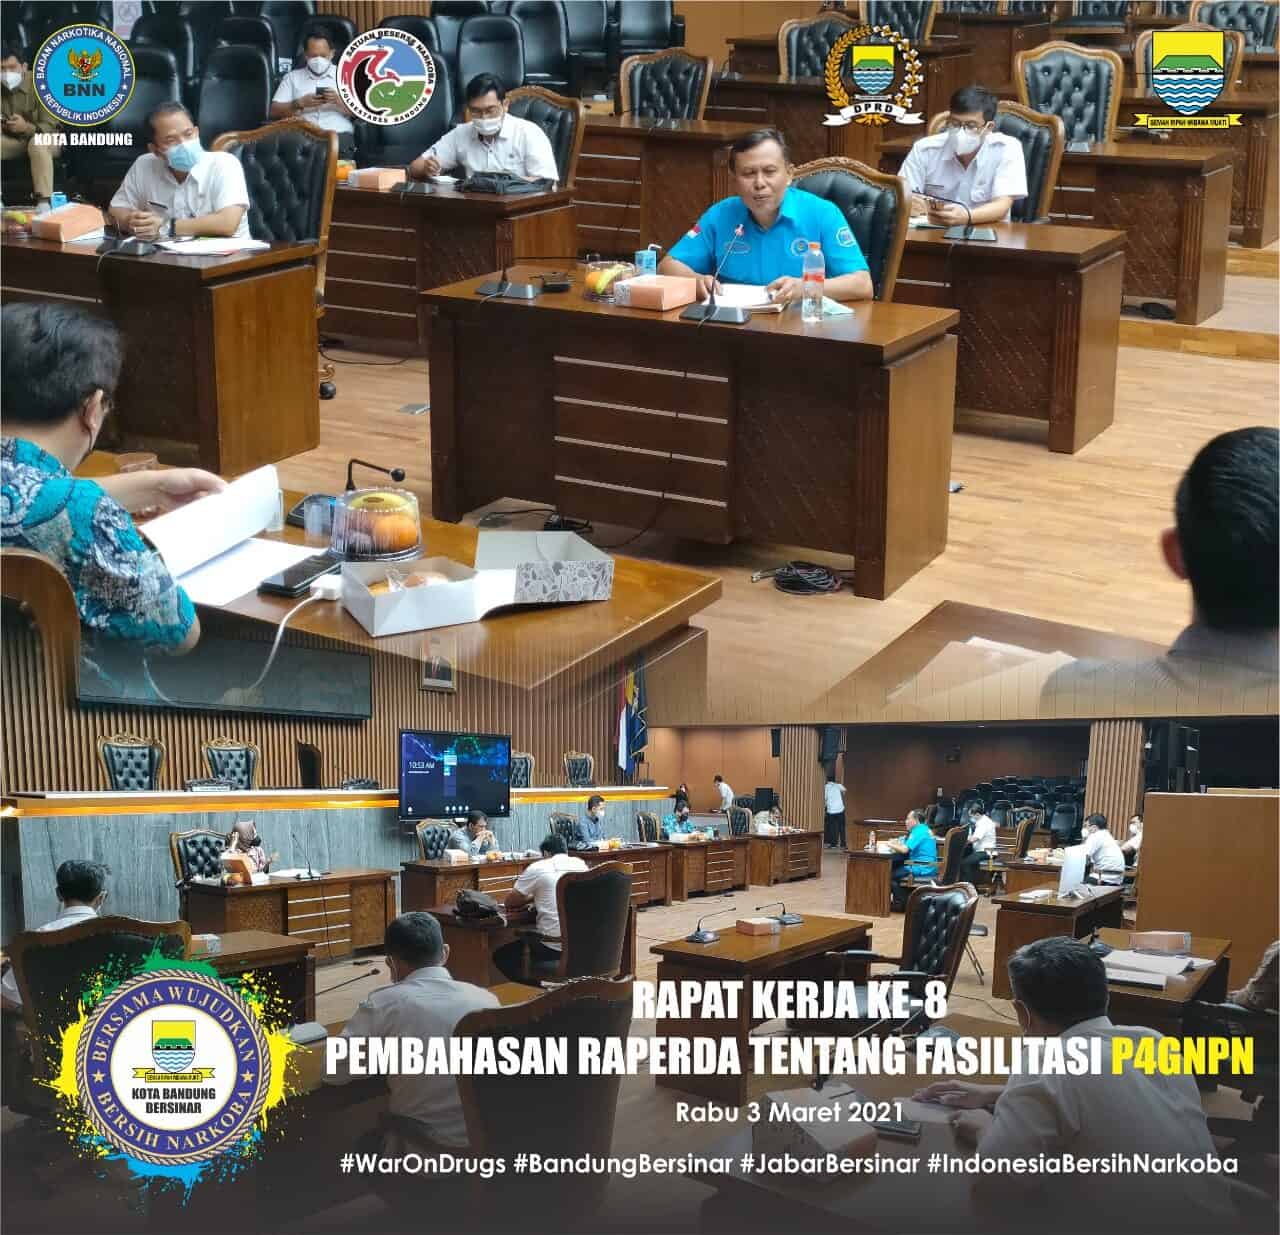 Rapat Kerja Ke 8, Pembahasan Rancangan Peraturan Daerah (RAPERDA) tentang Fasilitasi P4GNPN di Kota Bandung